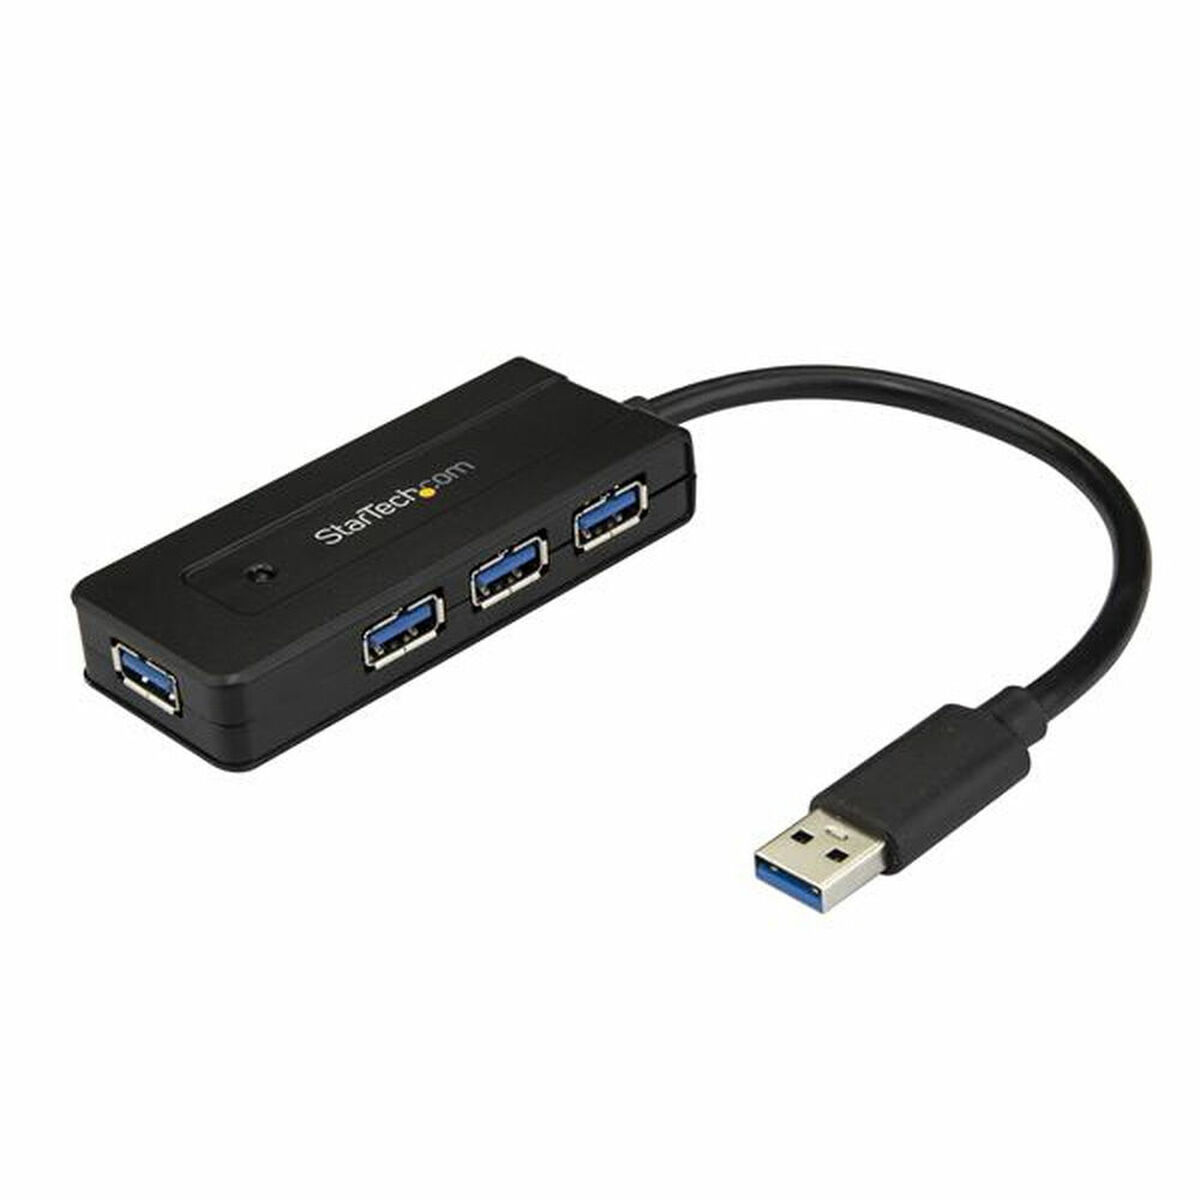 USB Hub Startech ST4300MINI          